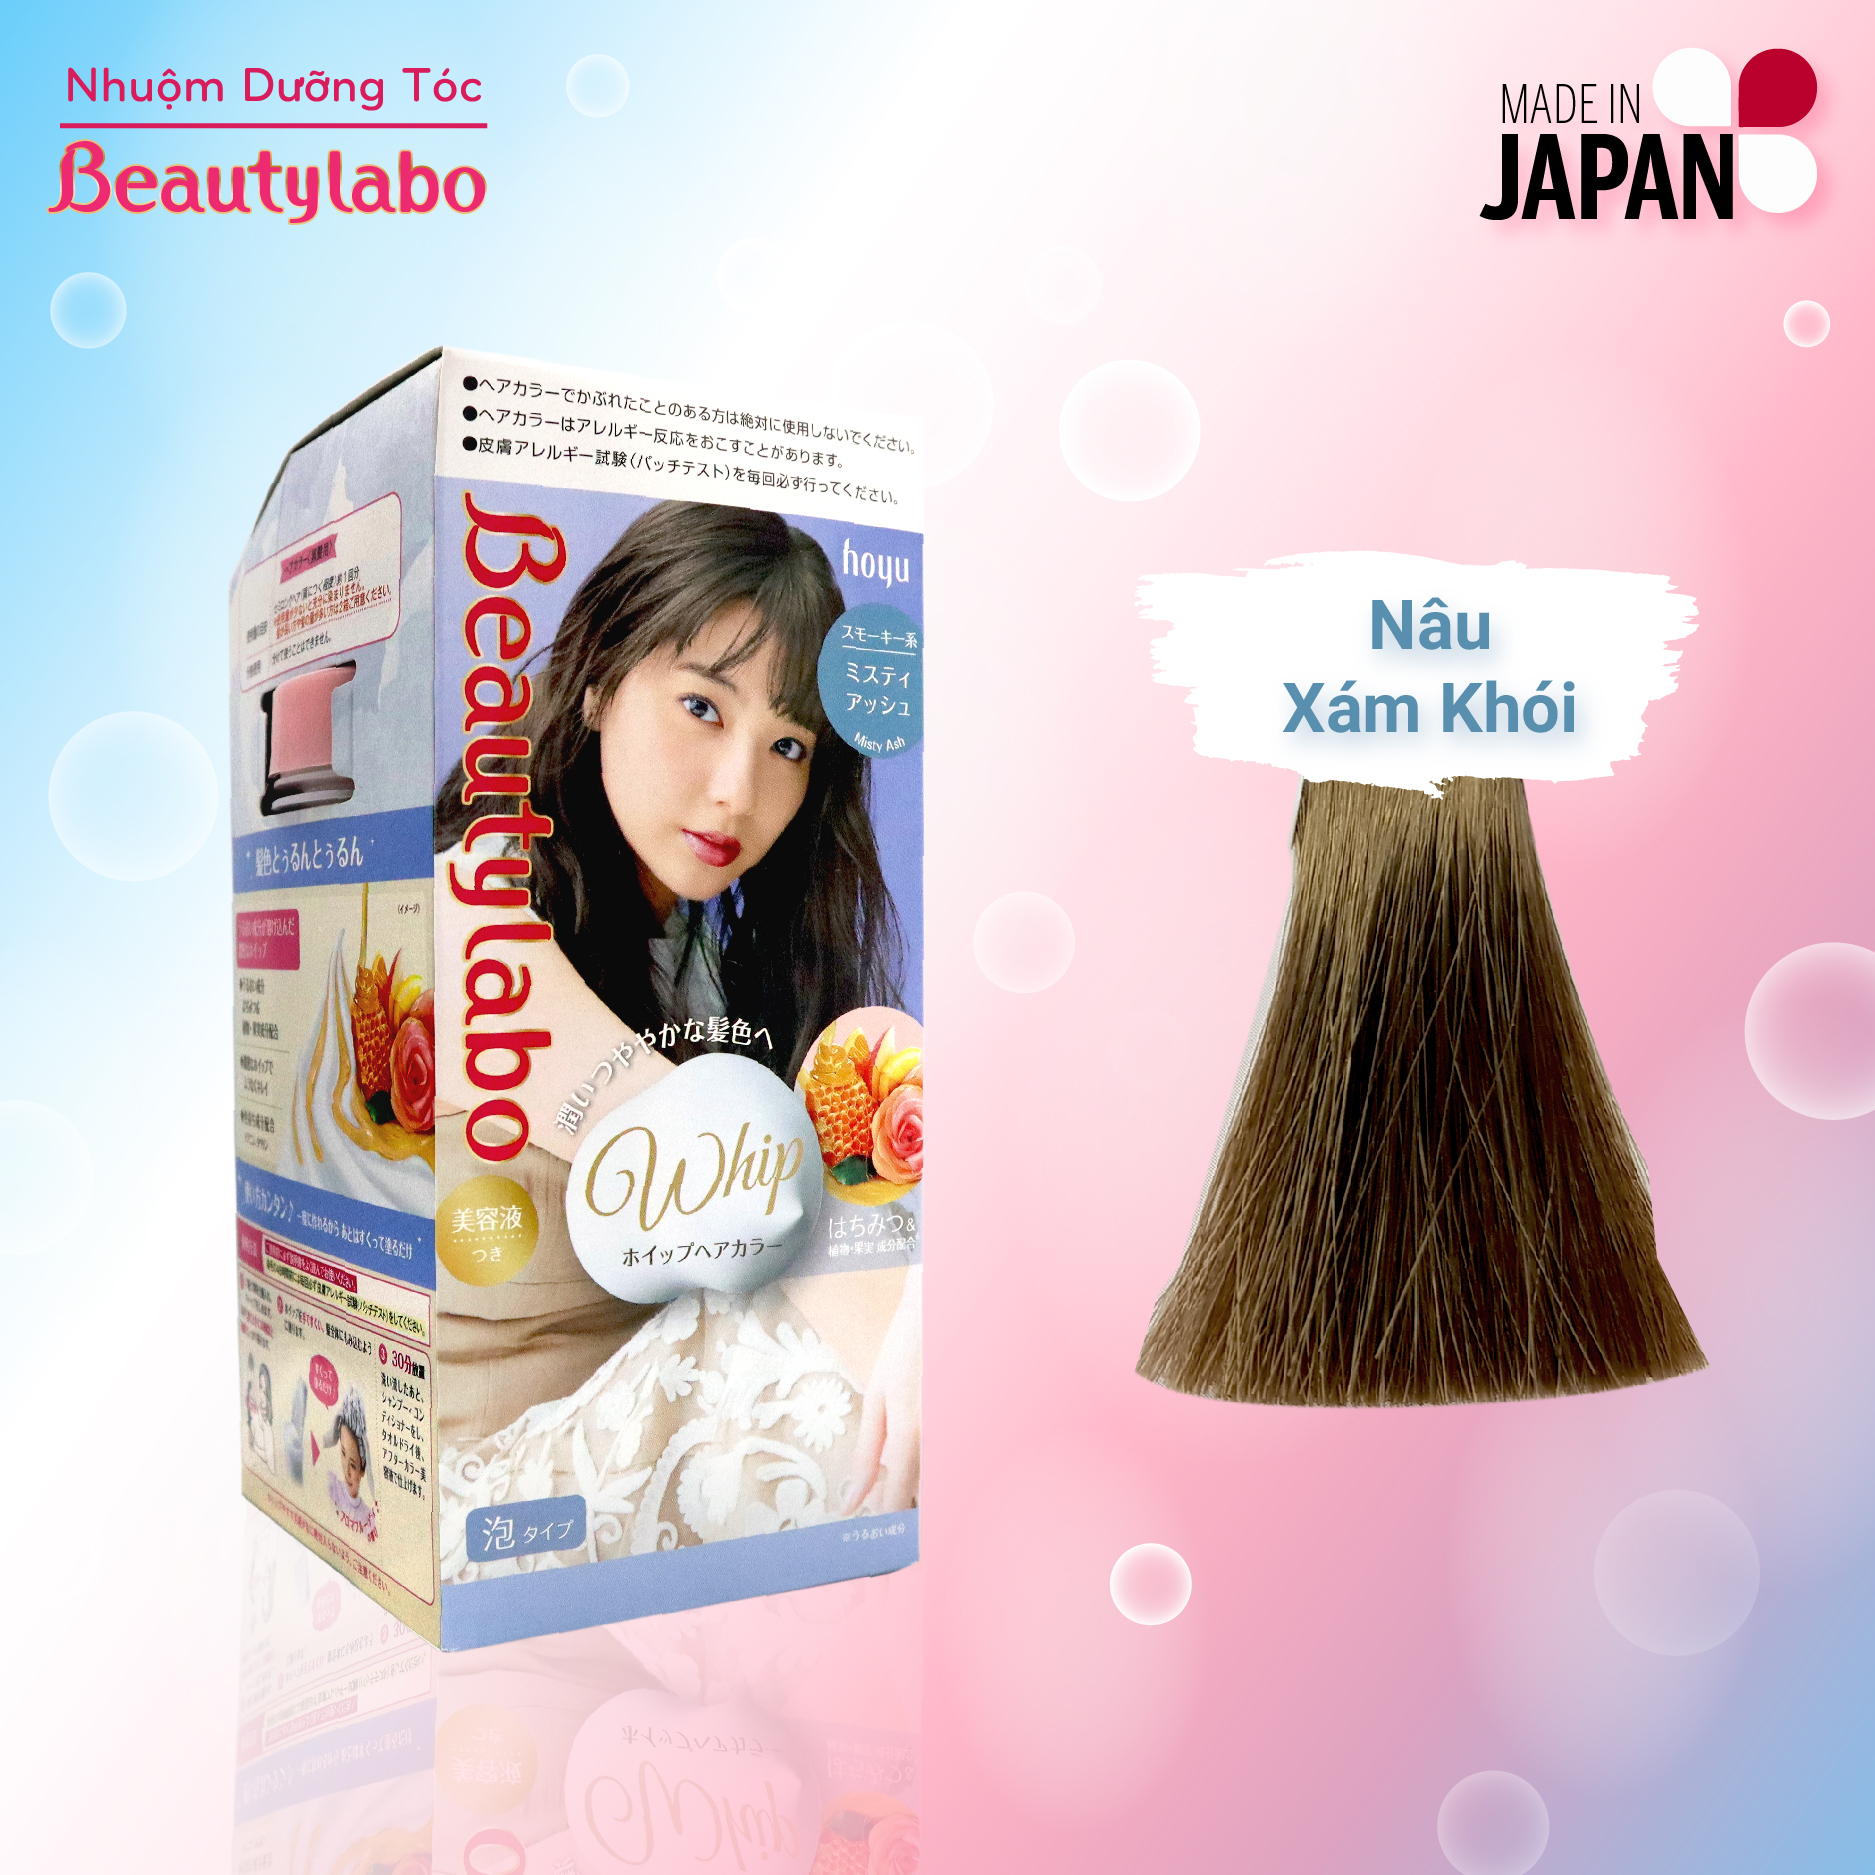 Beautylabo Whip Hair - Kem nhuộm tóc tạo bọt được yêu thích bởi tính tiện lợi và dễ sử dụng. Đặc biệt, Beautylabo Whip Hair có nhiều màu sắc đa dạng cho bạn lựa chọn. Hãy xem hình ảnh liên quan để hiểu thêm về sản phẩm này.